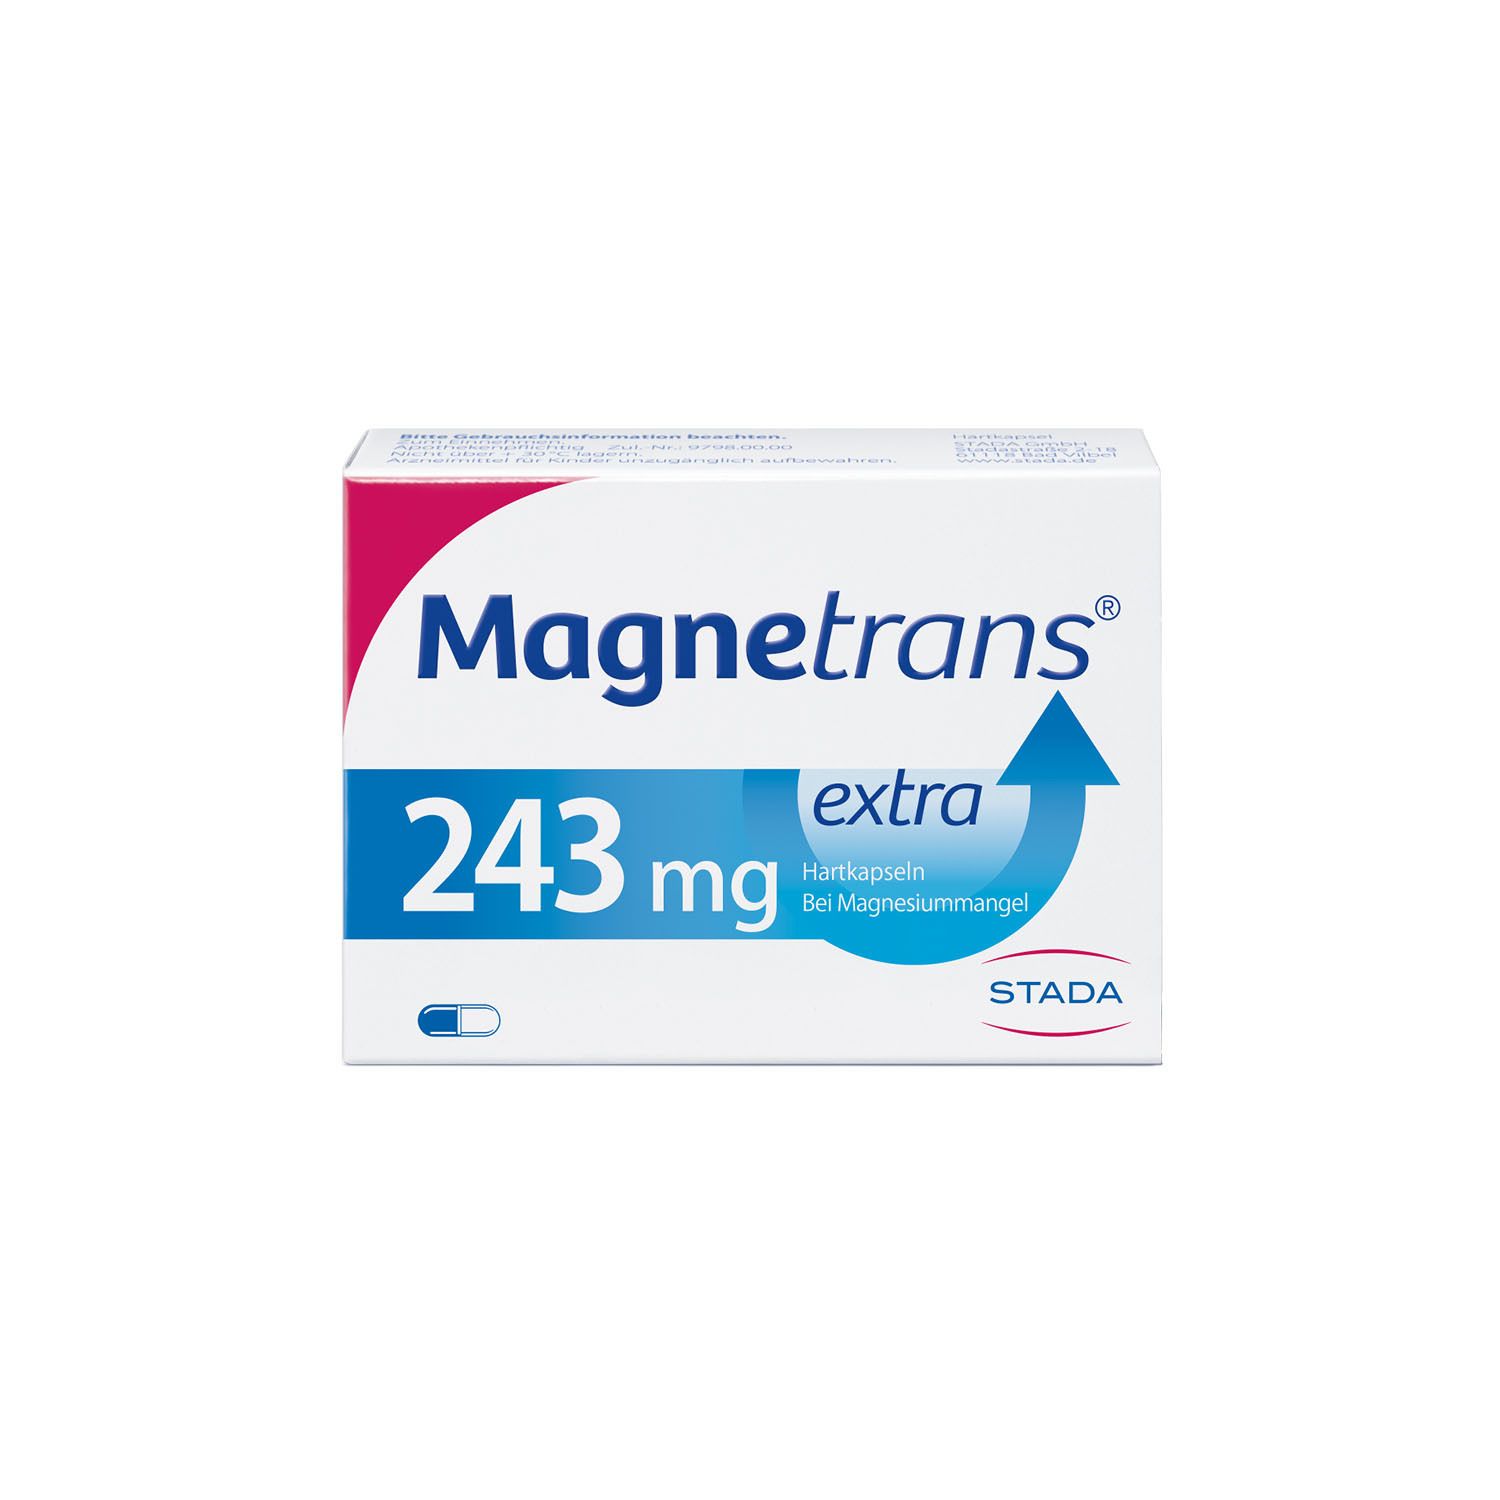 Magnetrans® extra 243 mg - Magnesiumkapseln für eine schnelle Hilfe bei Muskel- und Wadenkrämpfen bei nachgewiesenem Mag